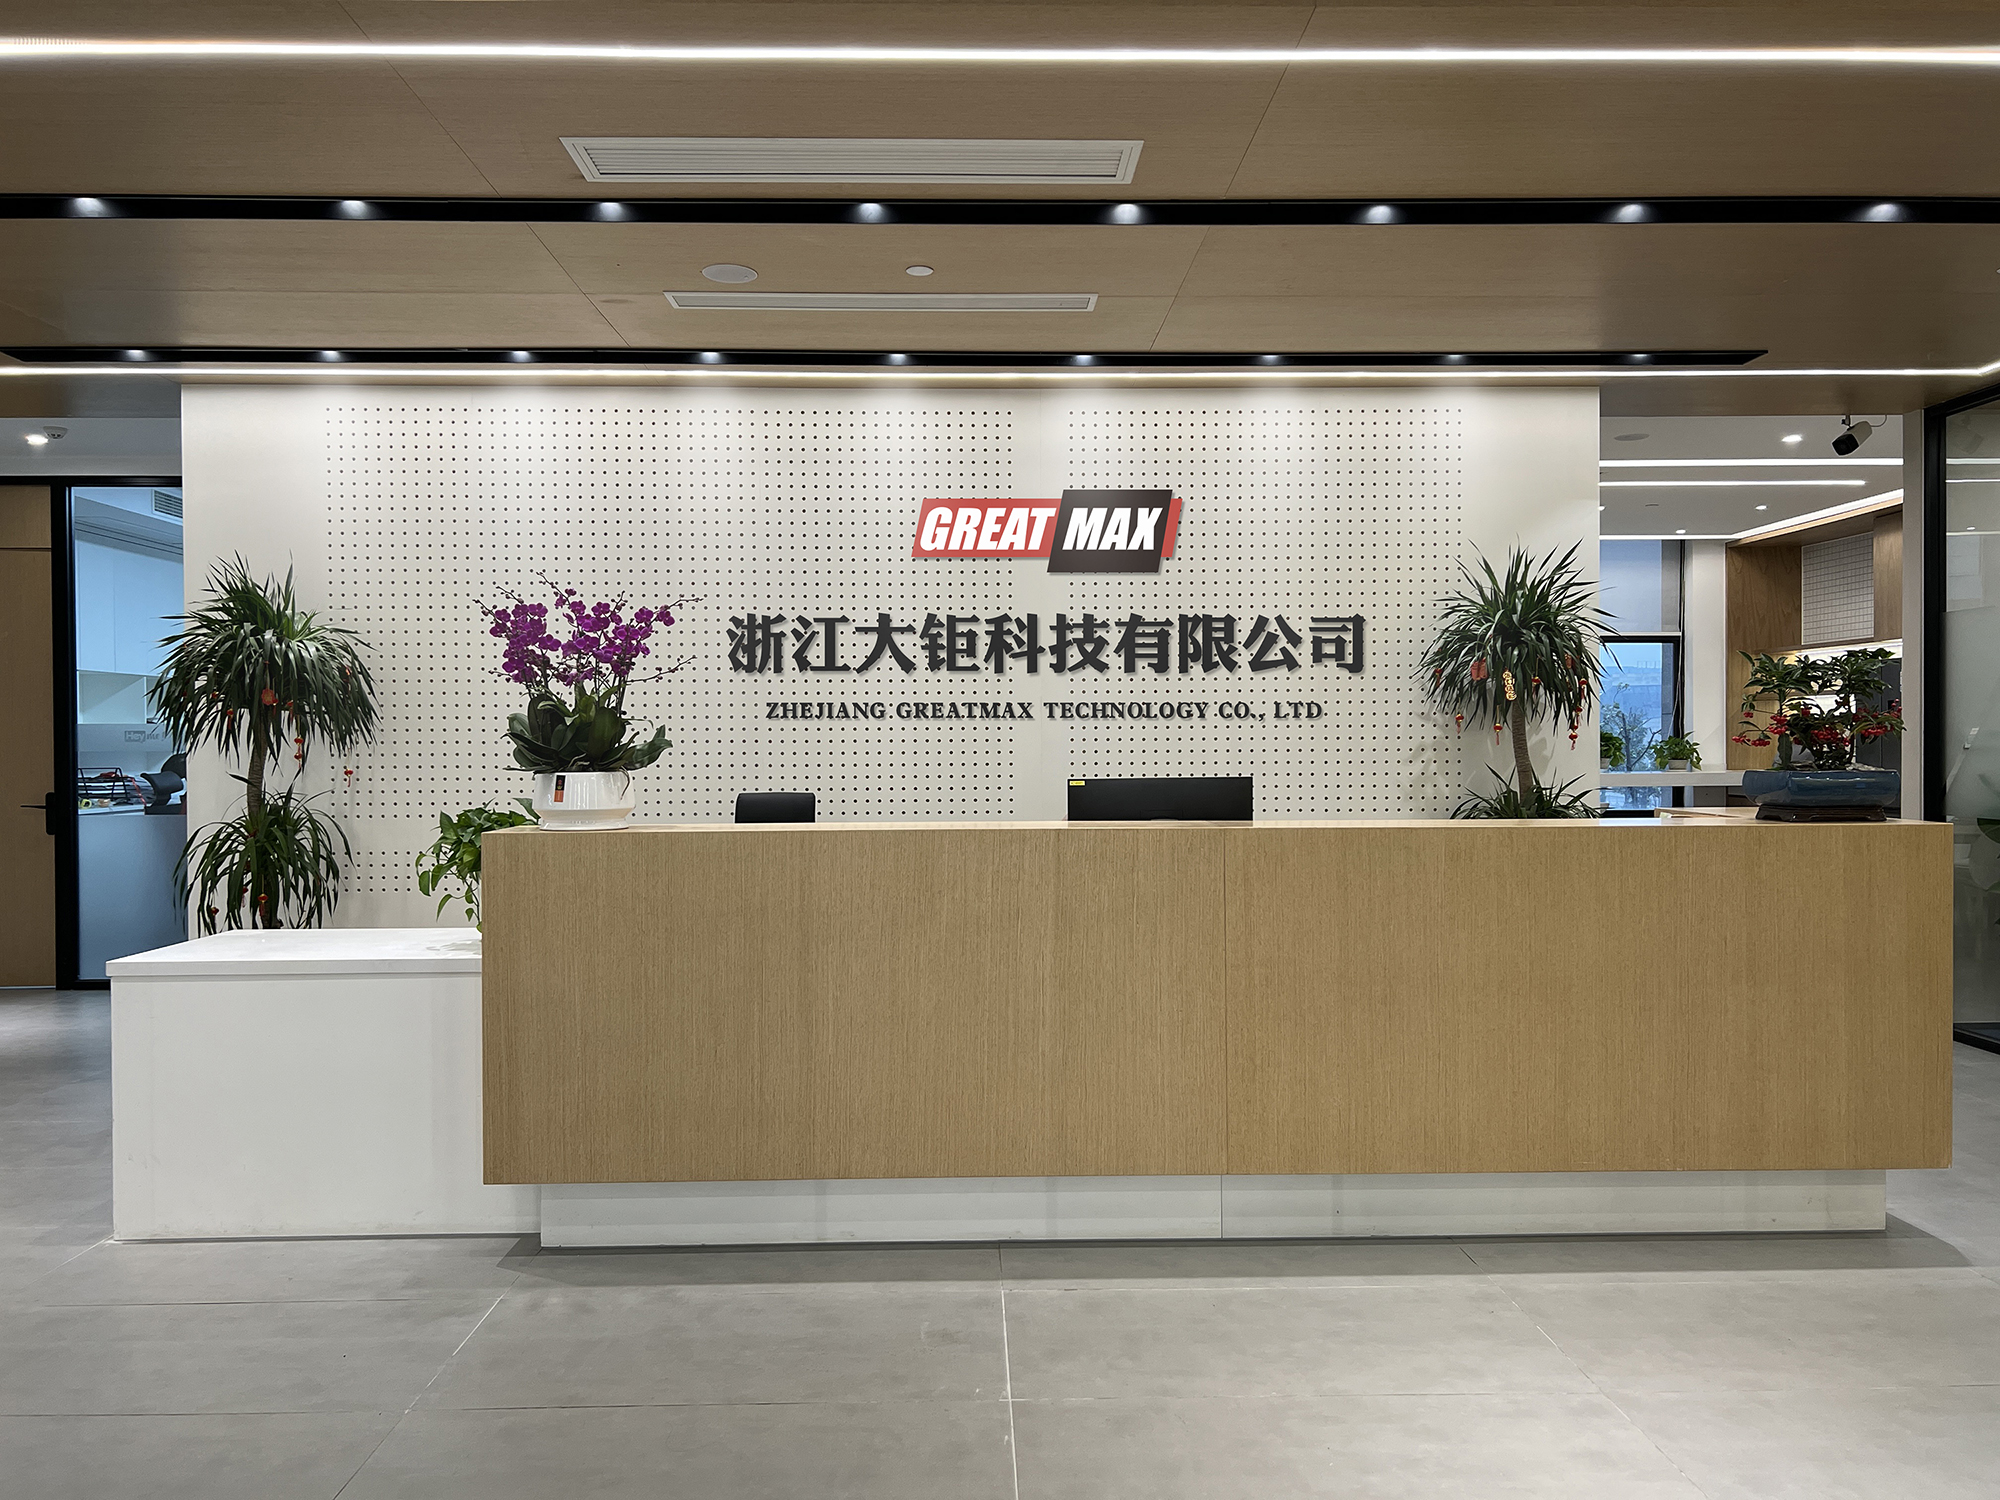 Greatmax Technology Co., Ltd Since 2015